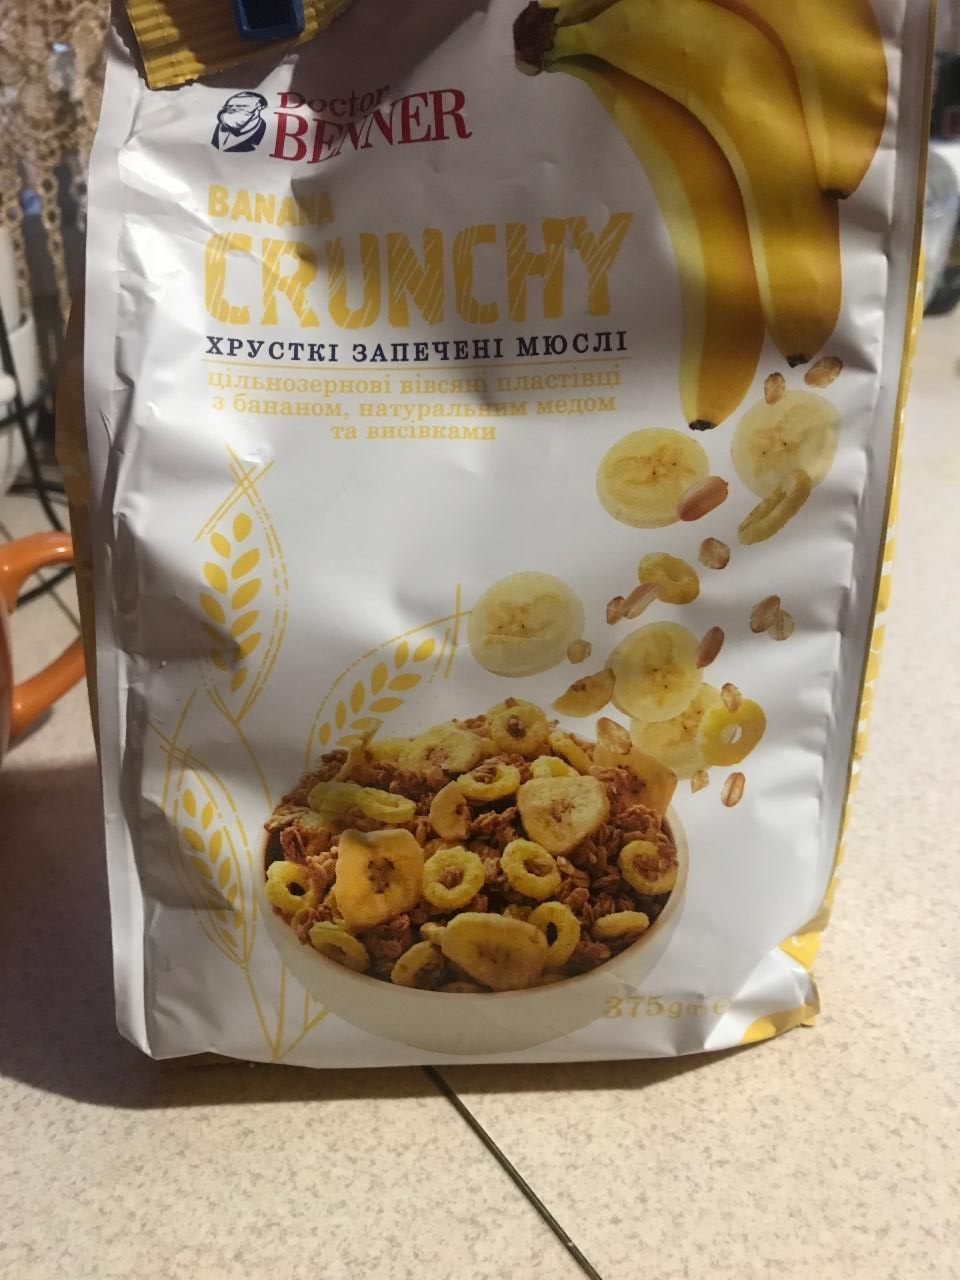 Фото - Мюсли запеченные хрустящие Banana Crunchy Doctor Benner